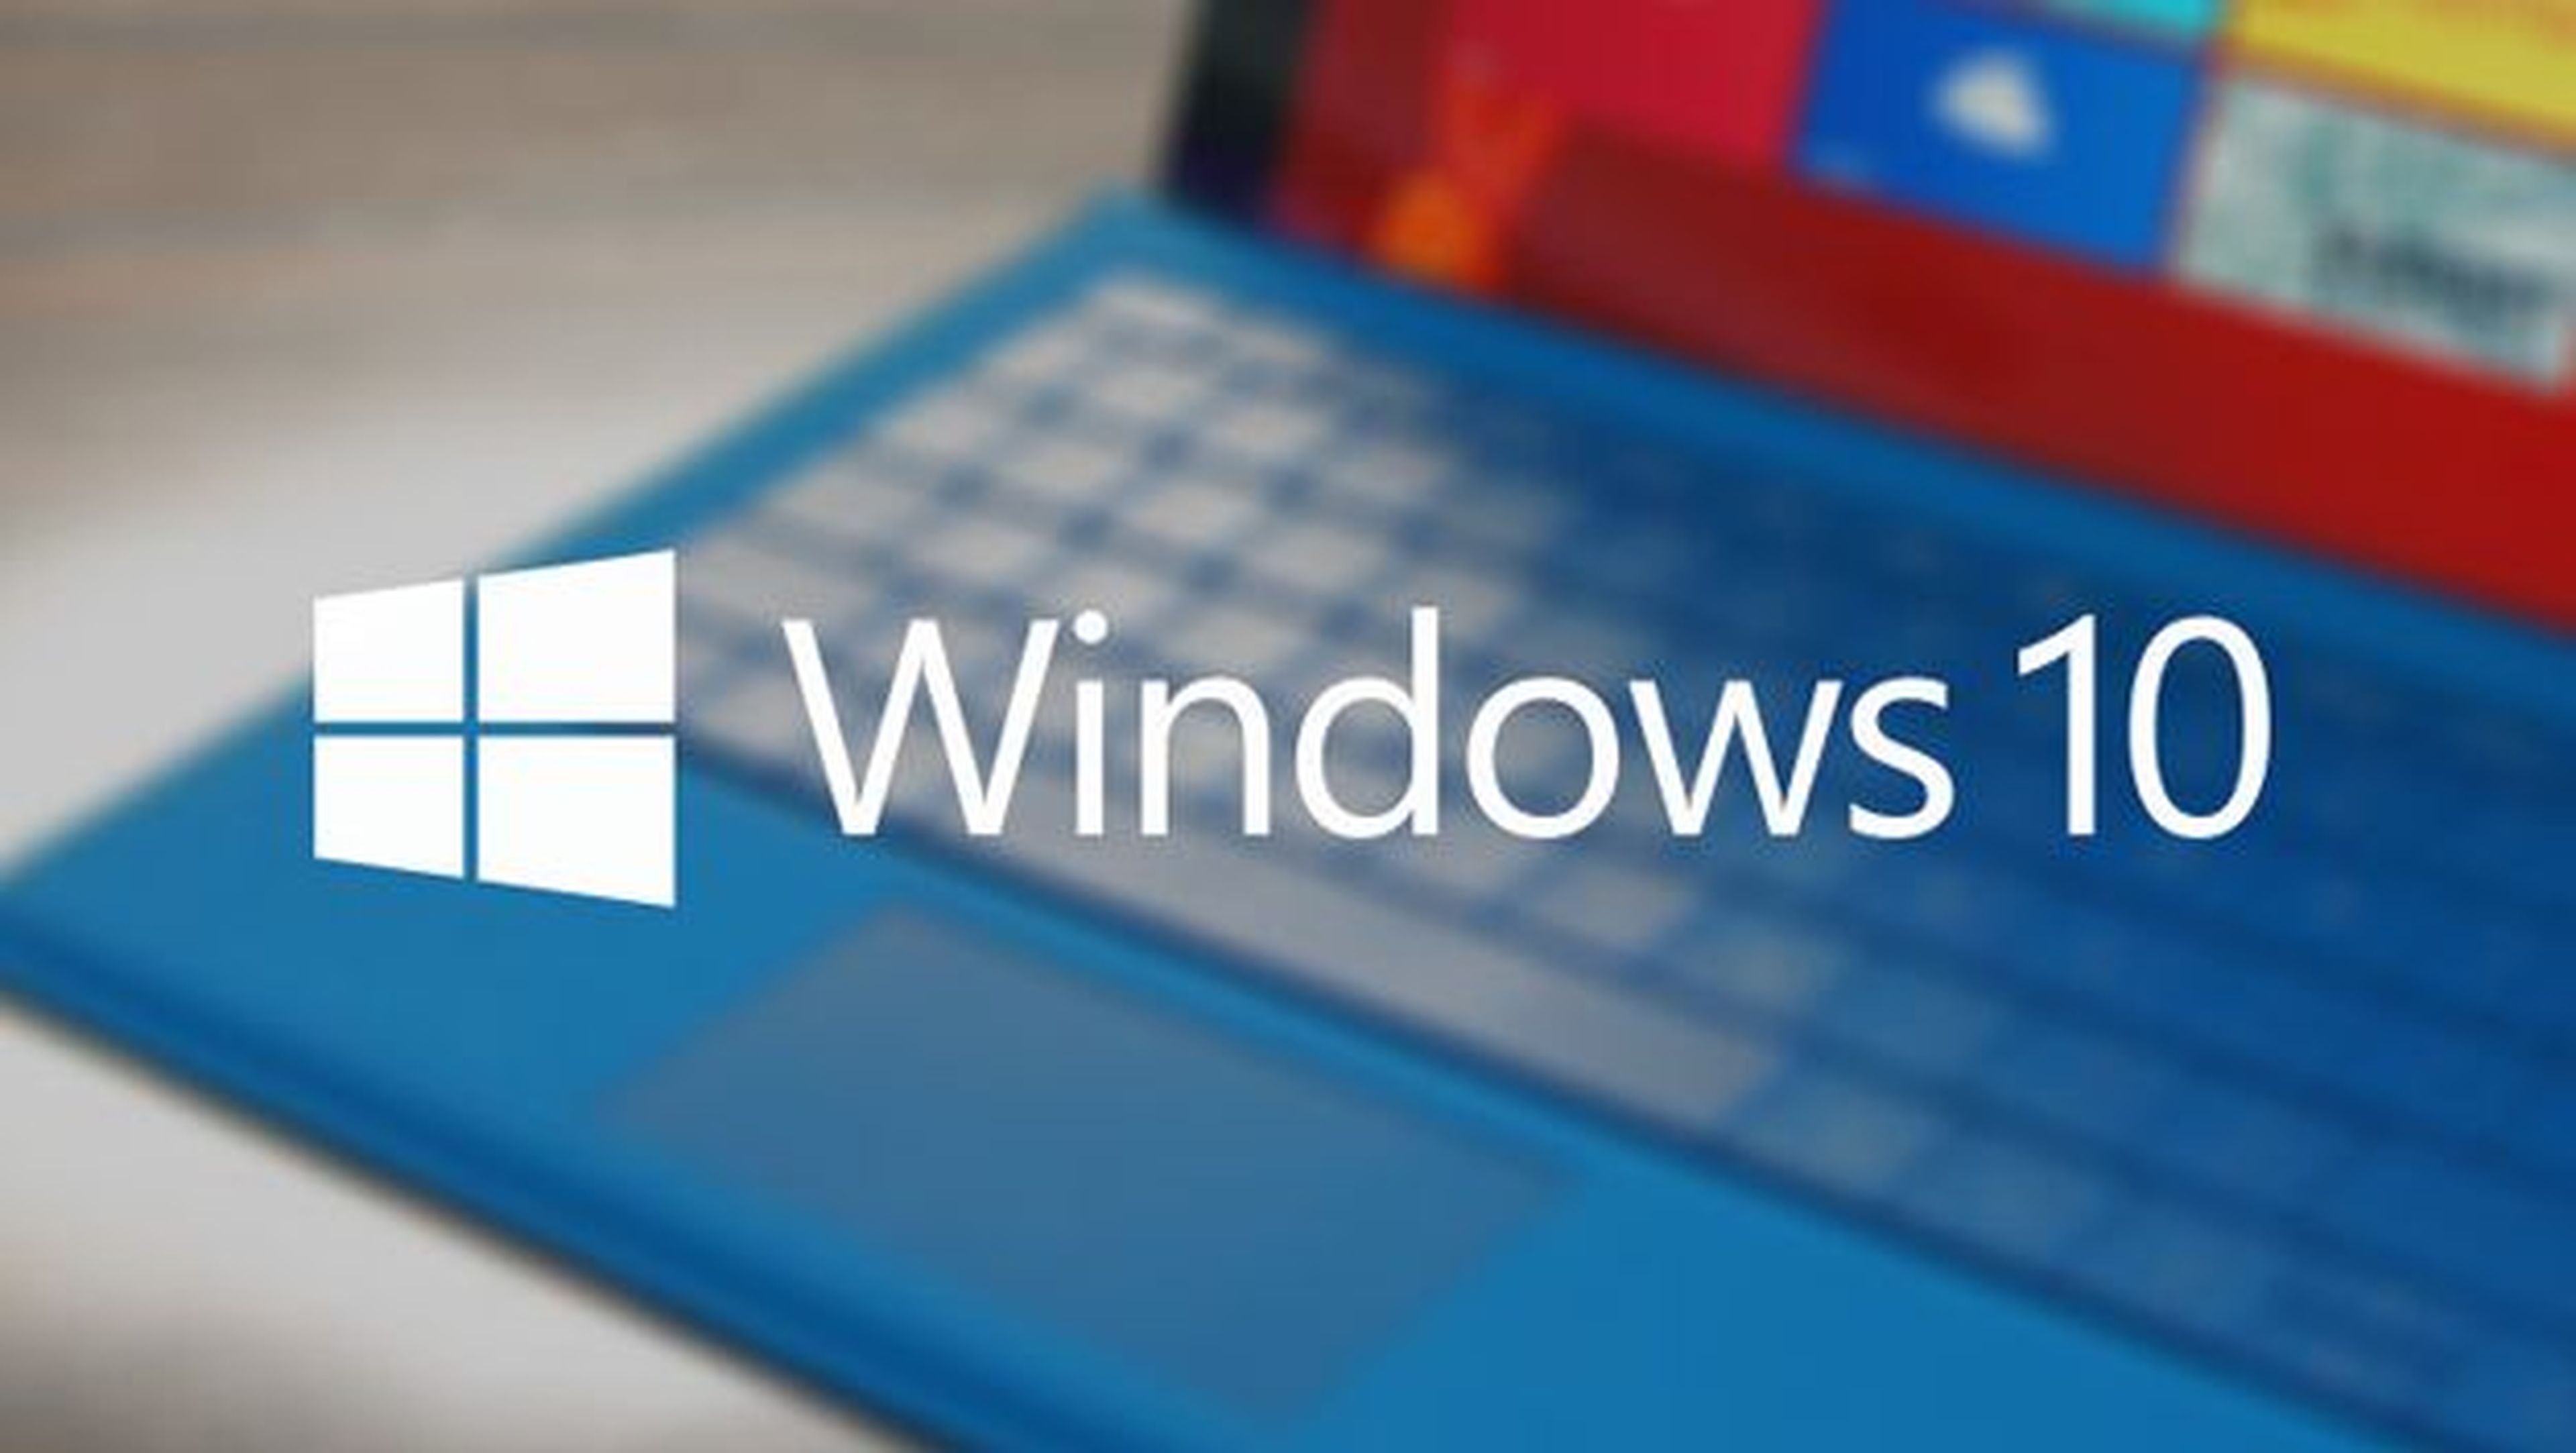 Windows 10 podría ser el sistema operativo de escritorio más popular del mundo.